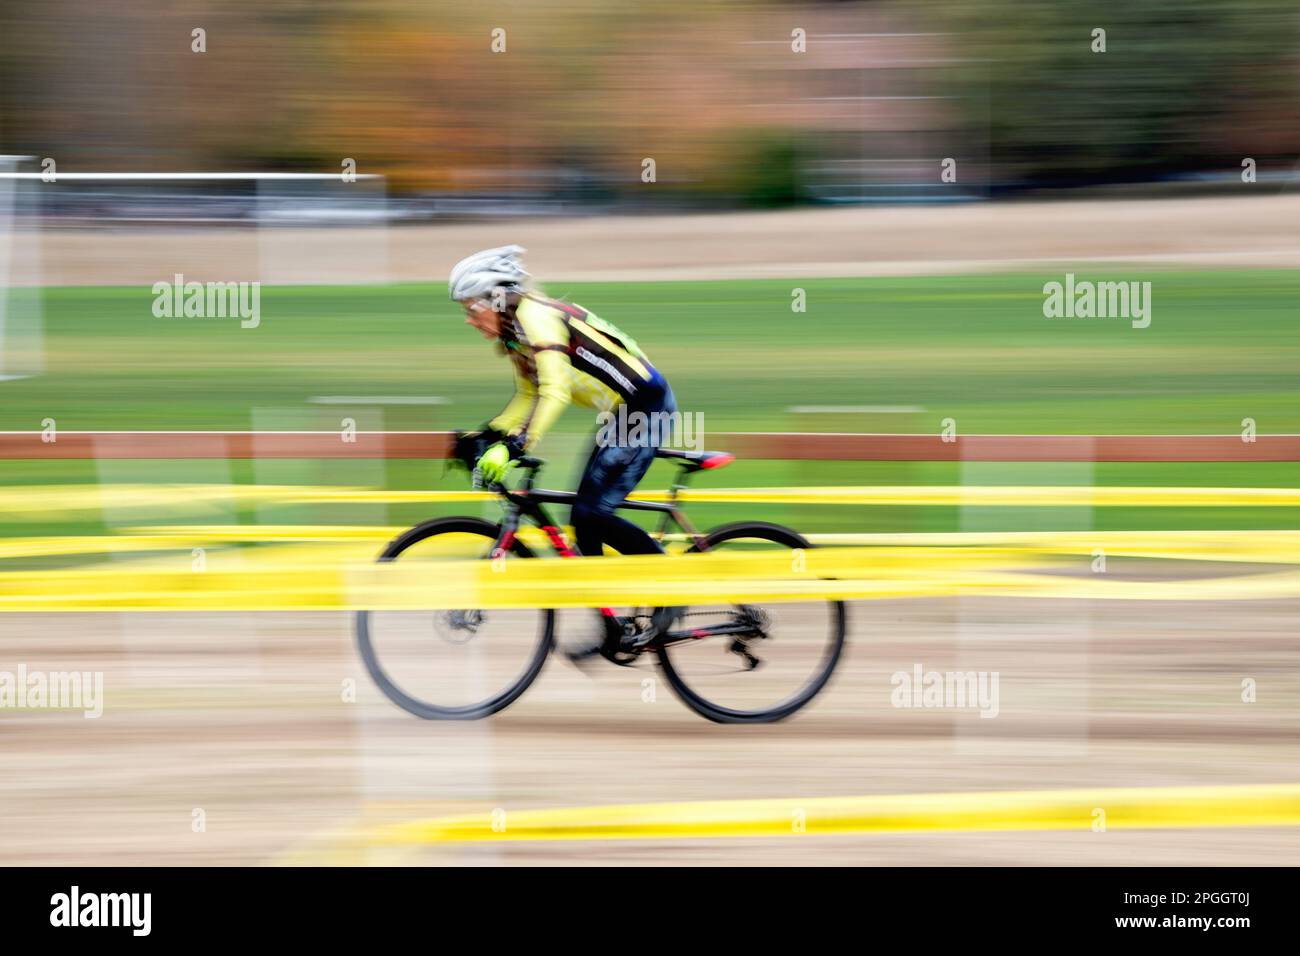 WA24068-00....Washington - Senior Citizen Vicky Spring (69) Compeating in una corsa di ciclocross nella regione occidentale di Washington. Vicky in giallo. Foto Stock